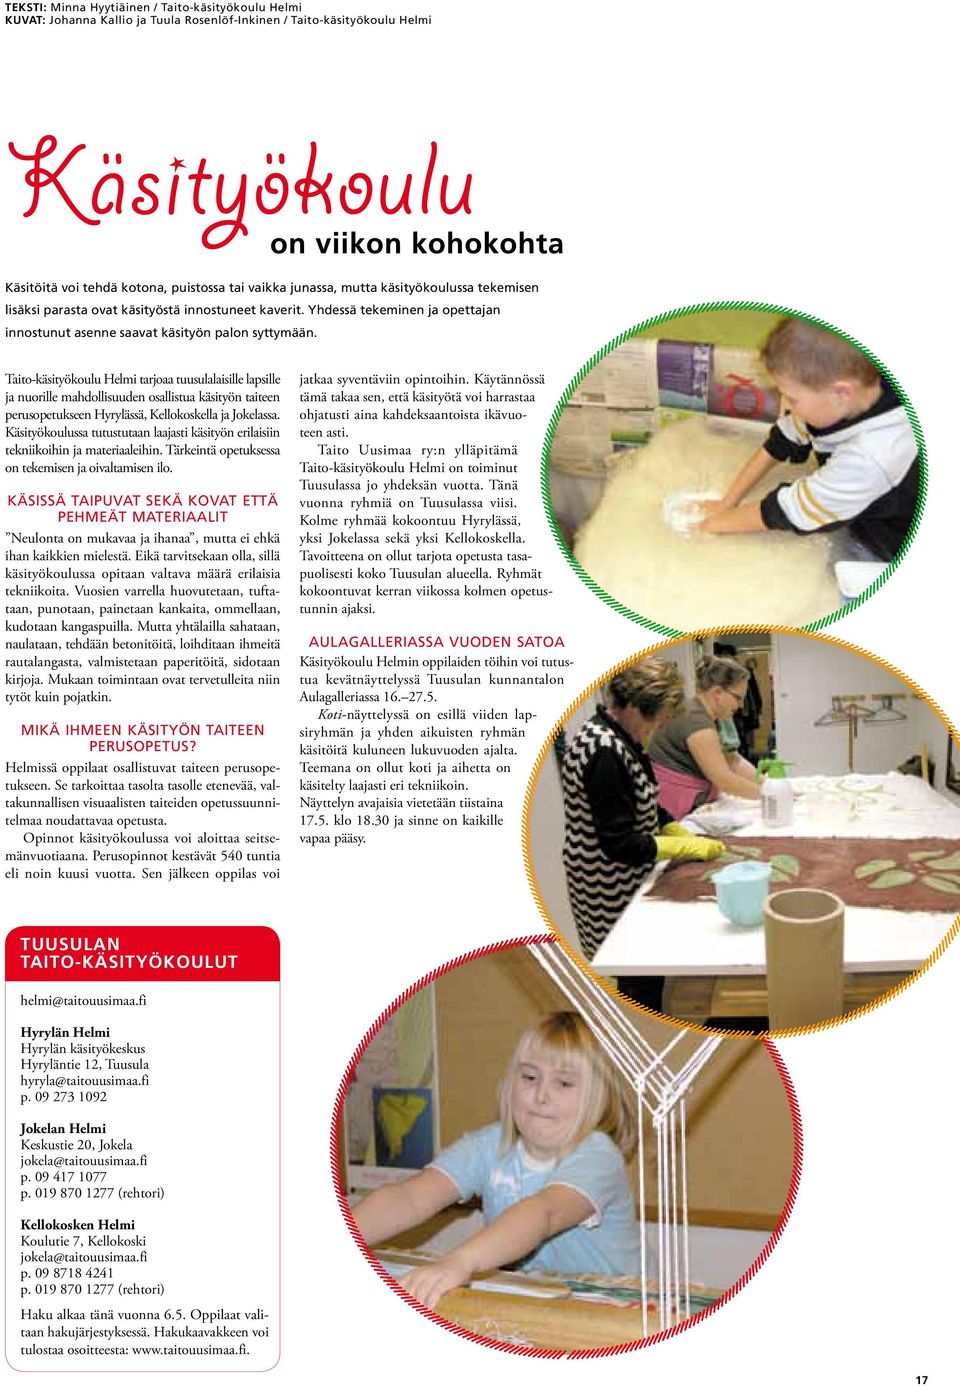 Taito-käsityökoulu Helmi tarjoaa tuusulalaisille lapsille ja nuorille mahdollisuuden osallistua käsityön taiteen perusopetukseen Hyrylässä, Kellokoskella ja Jokelassa.